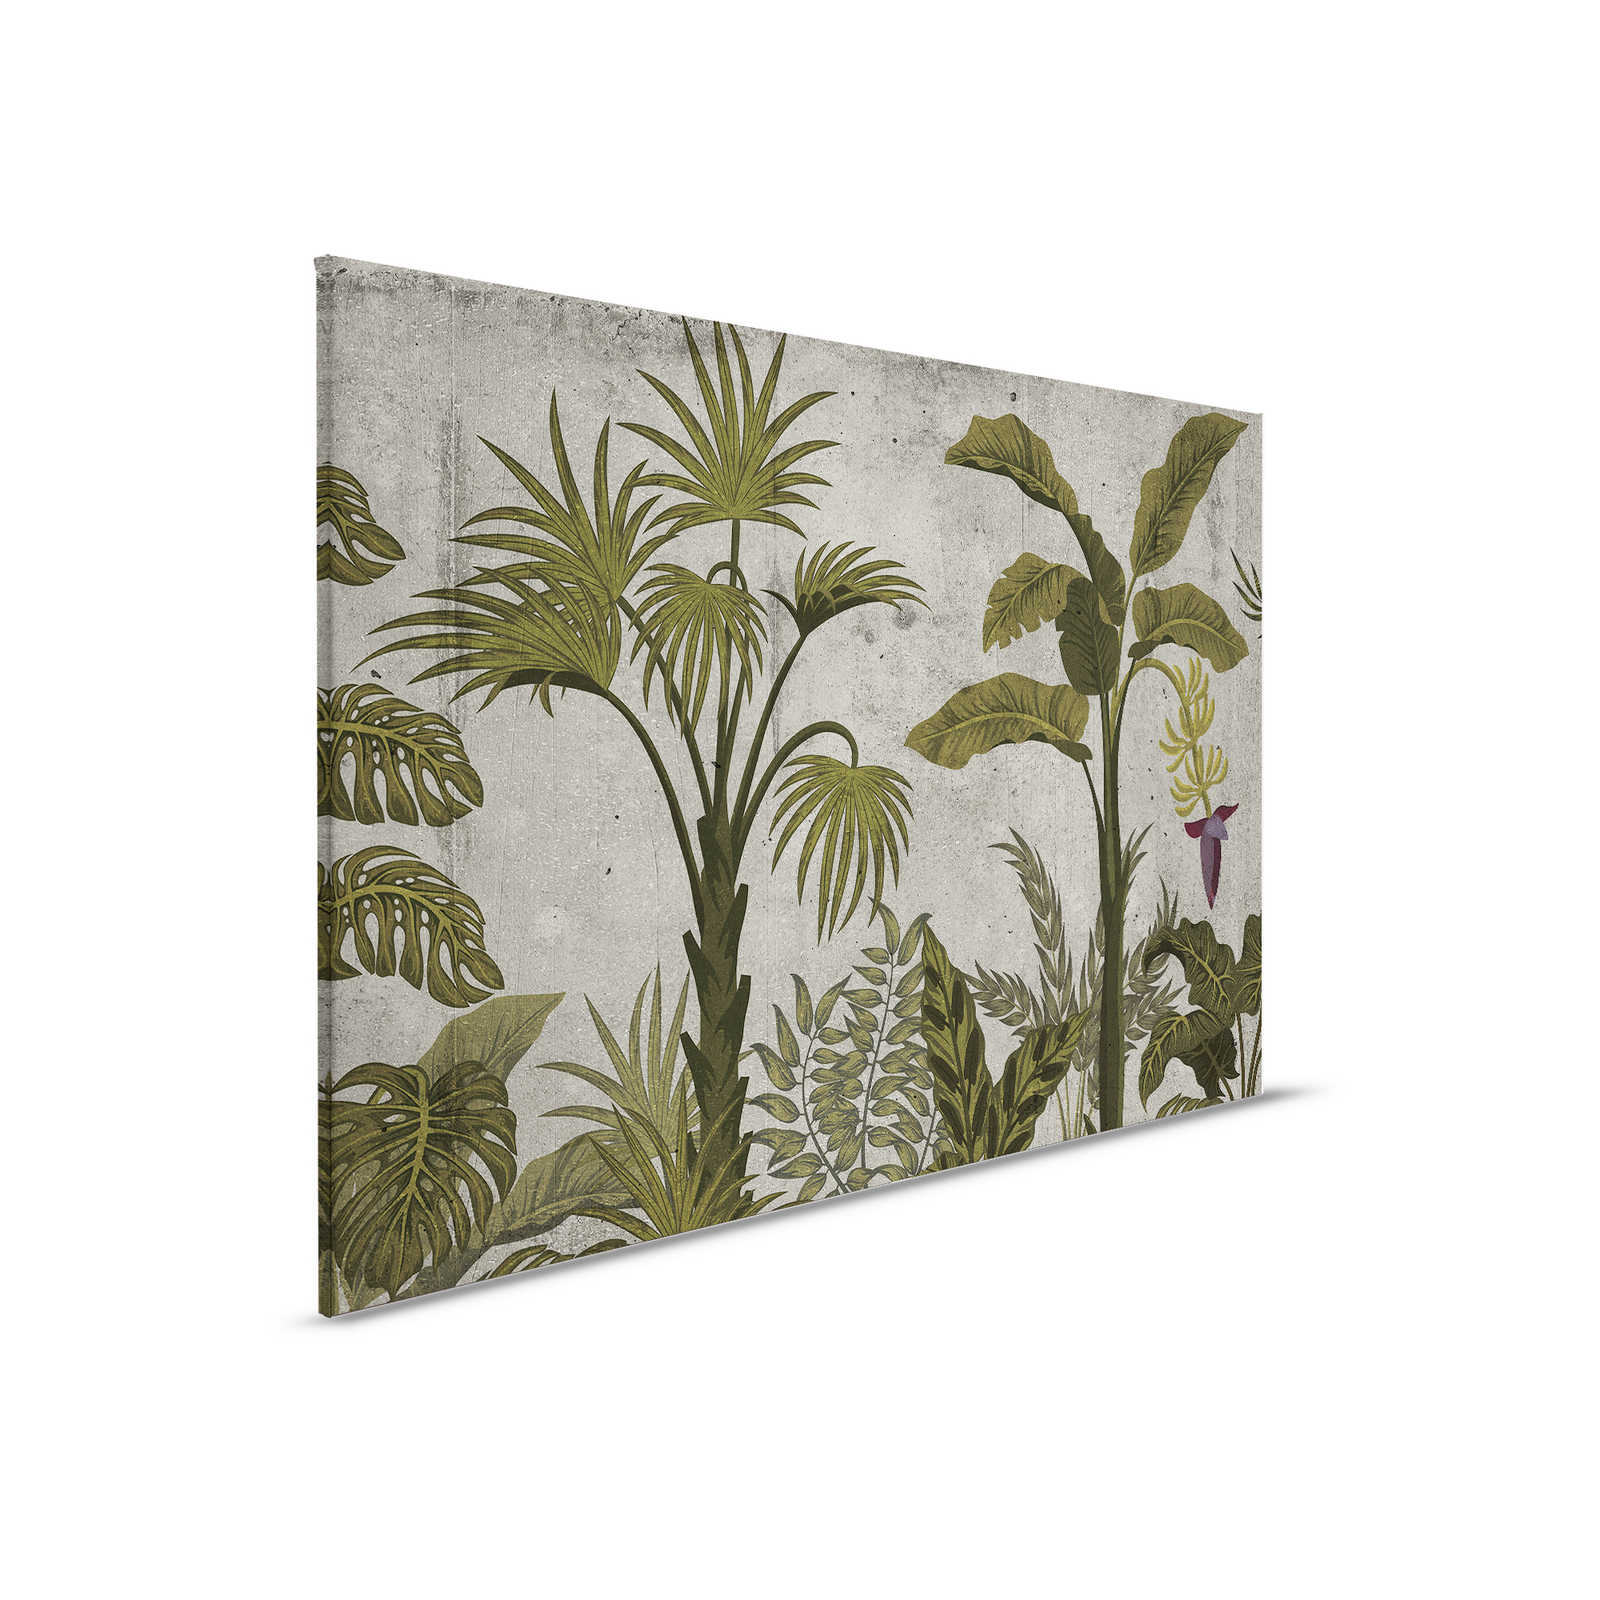 Tableau toile avec paysage tropical sur imitation béton - 0,90 m x 0,60 m
